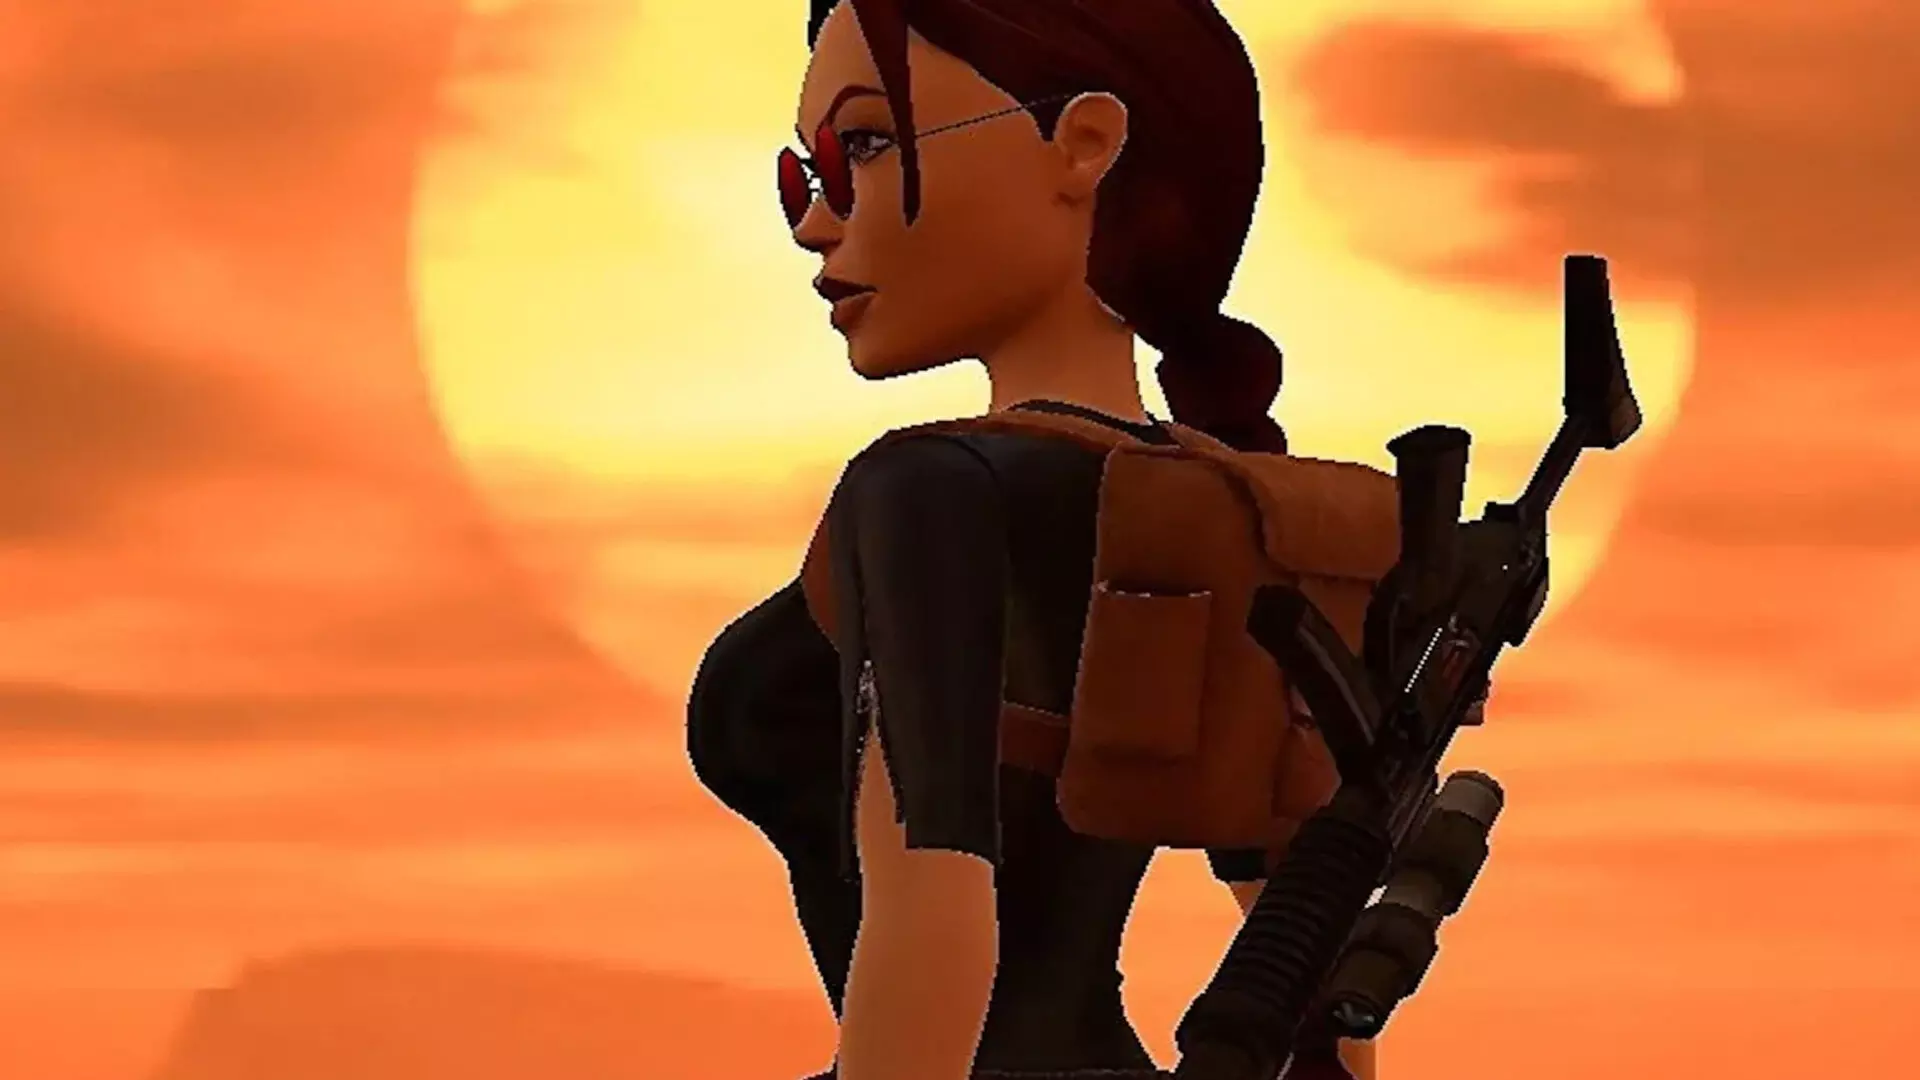 लारा क्रॉफ्ट को अब तक का सबसे प्रतिष्ठित वीडियो गेम चरित्र चुना गया